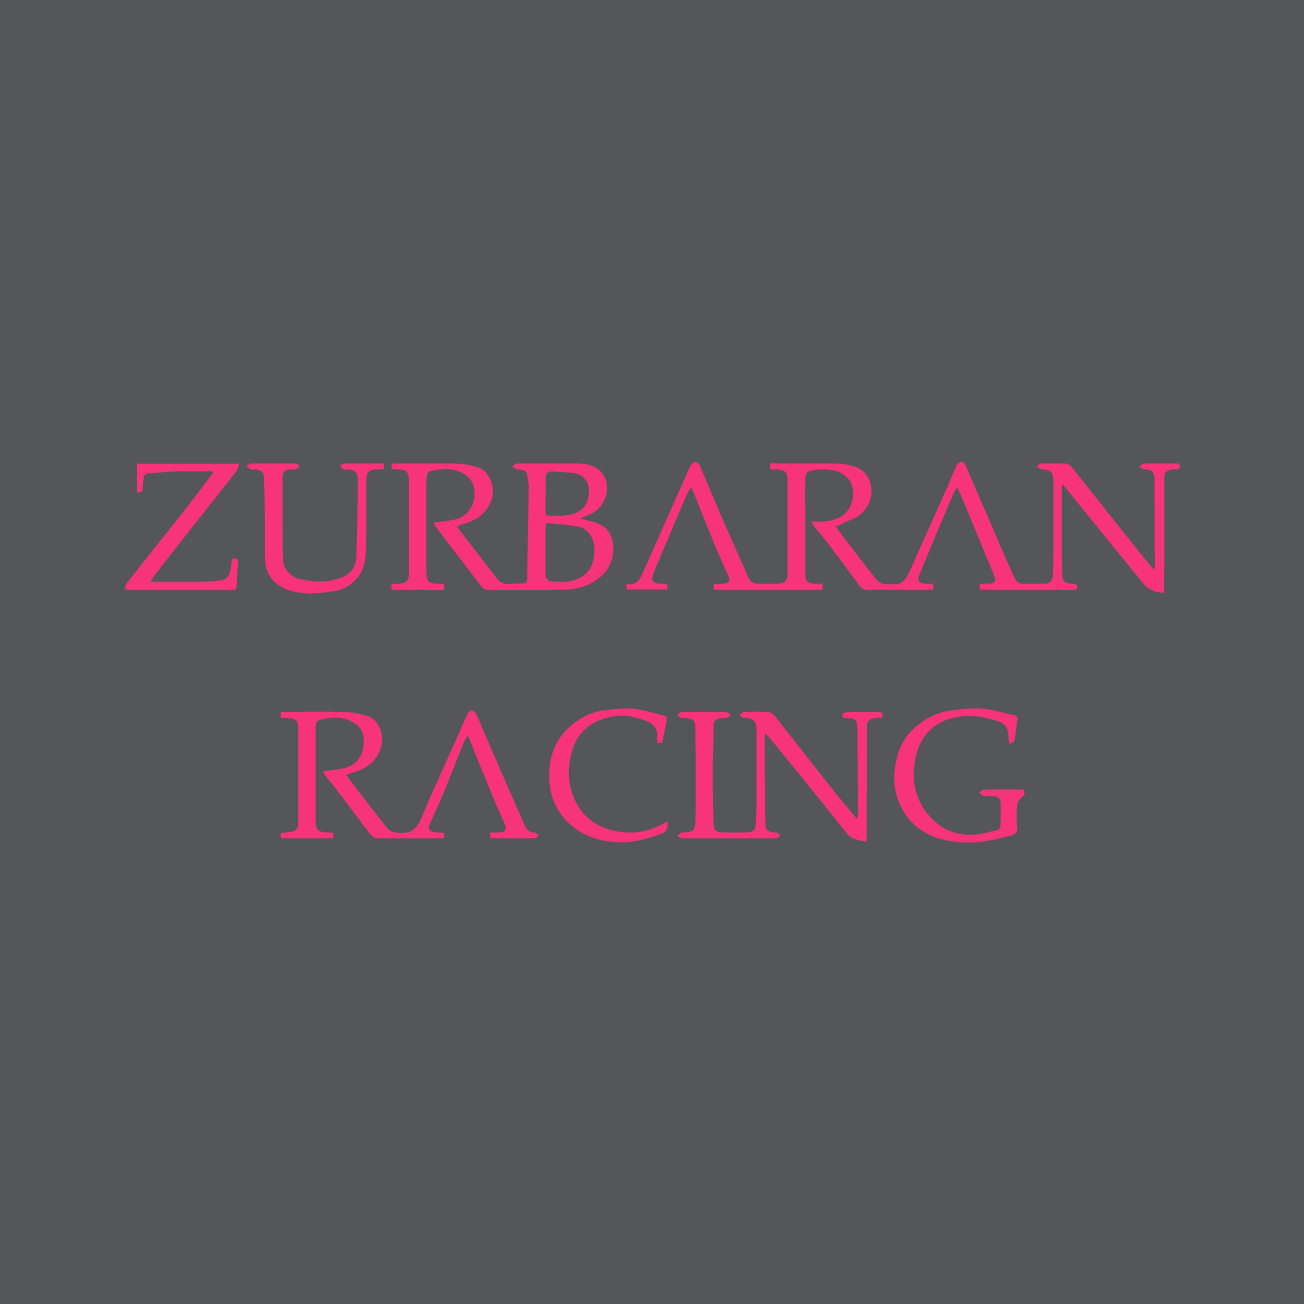 Club Image for ZURBARAN